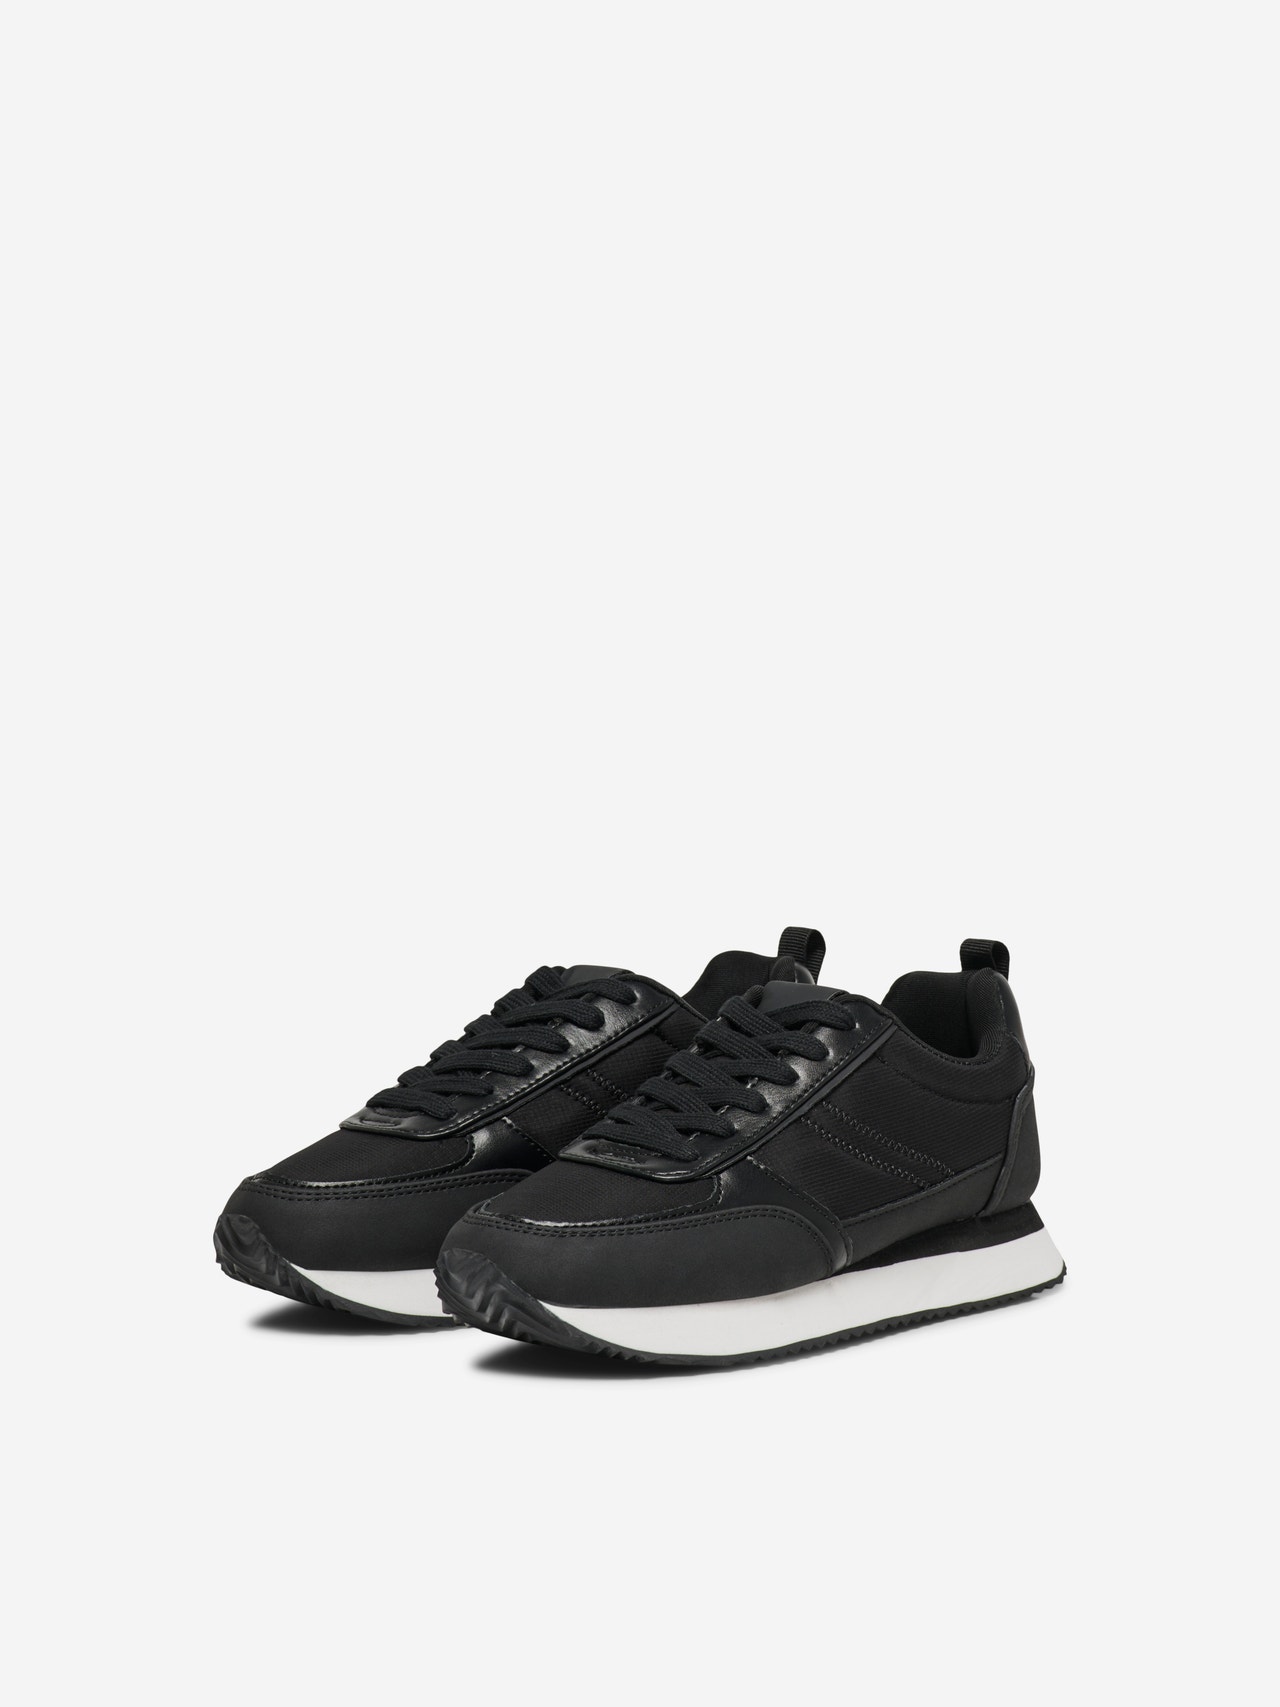 ONLY Almond toe Sneaker -Black - 15304452